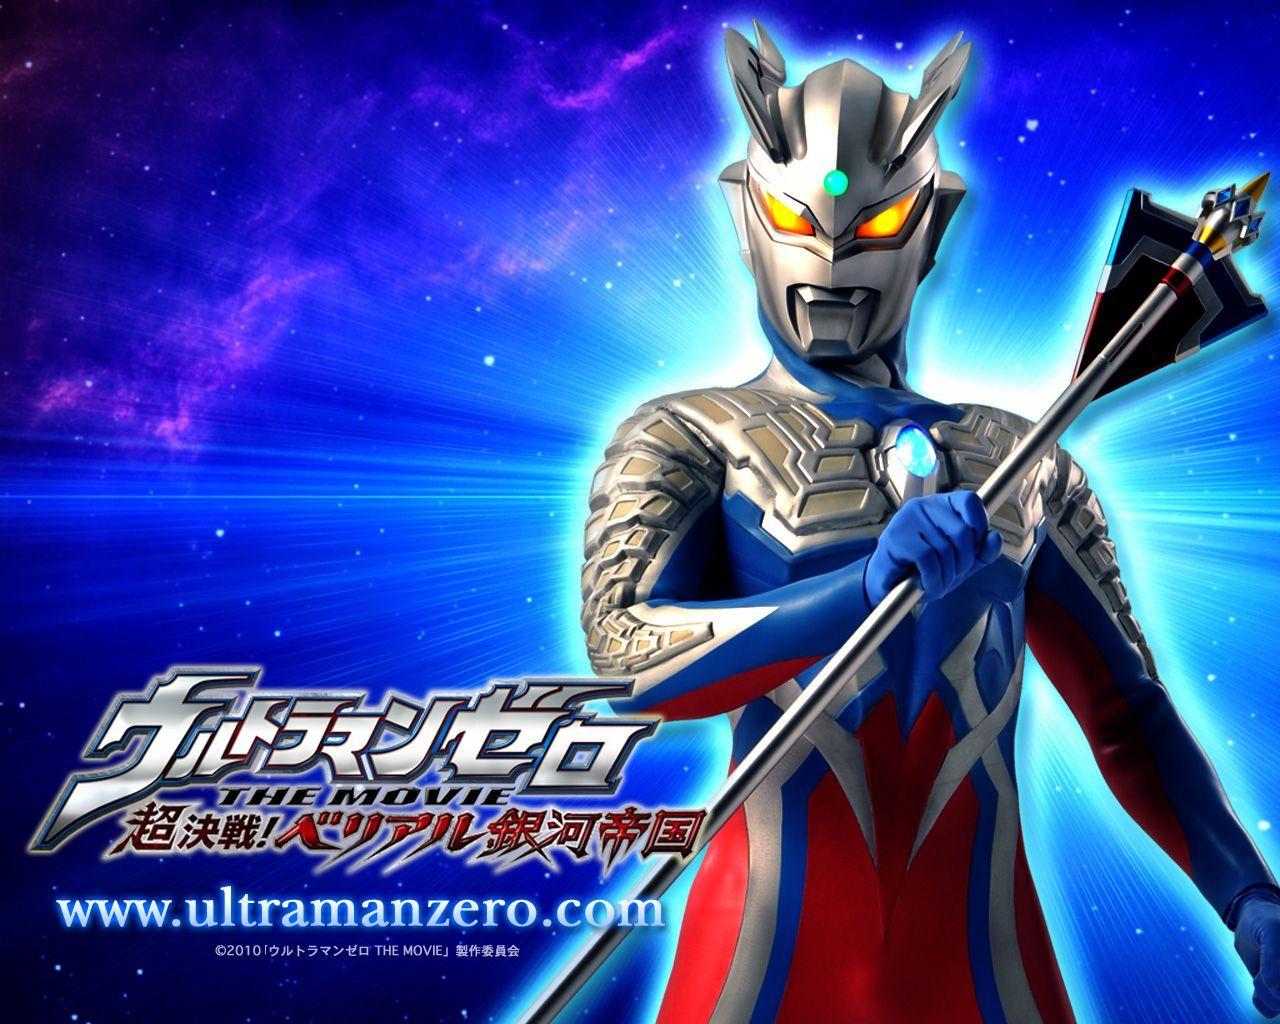 Ultraman Zero là một trong những chiến binh vô cùng mạnh mẽ và tinh nhuệ của gia tộc Ultra, với khả năng biến hình đặc biệt giúp anh ta chiến đấu với những quái vật xâm lăng Trái Đất. Năm 2024, khán giả sẽ được tái ngộ với Ultraman Zero trong những cuộc chiến đầy khó khăn tại trận địa được tái hiện chân thực và sinh động. Nhấn vào hình ảnh để tìm hiểu thêm về một trong những siêu anh hùng đáng yêu nhất của Ultraman.